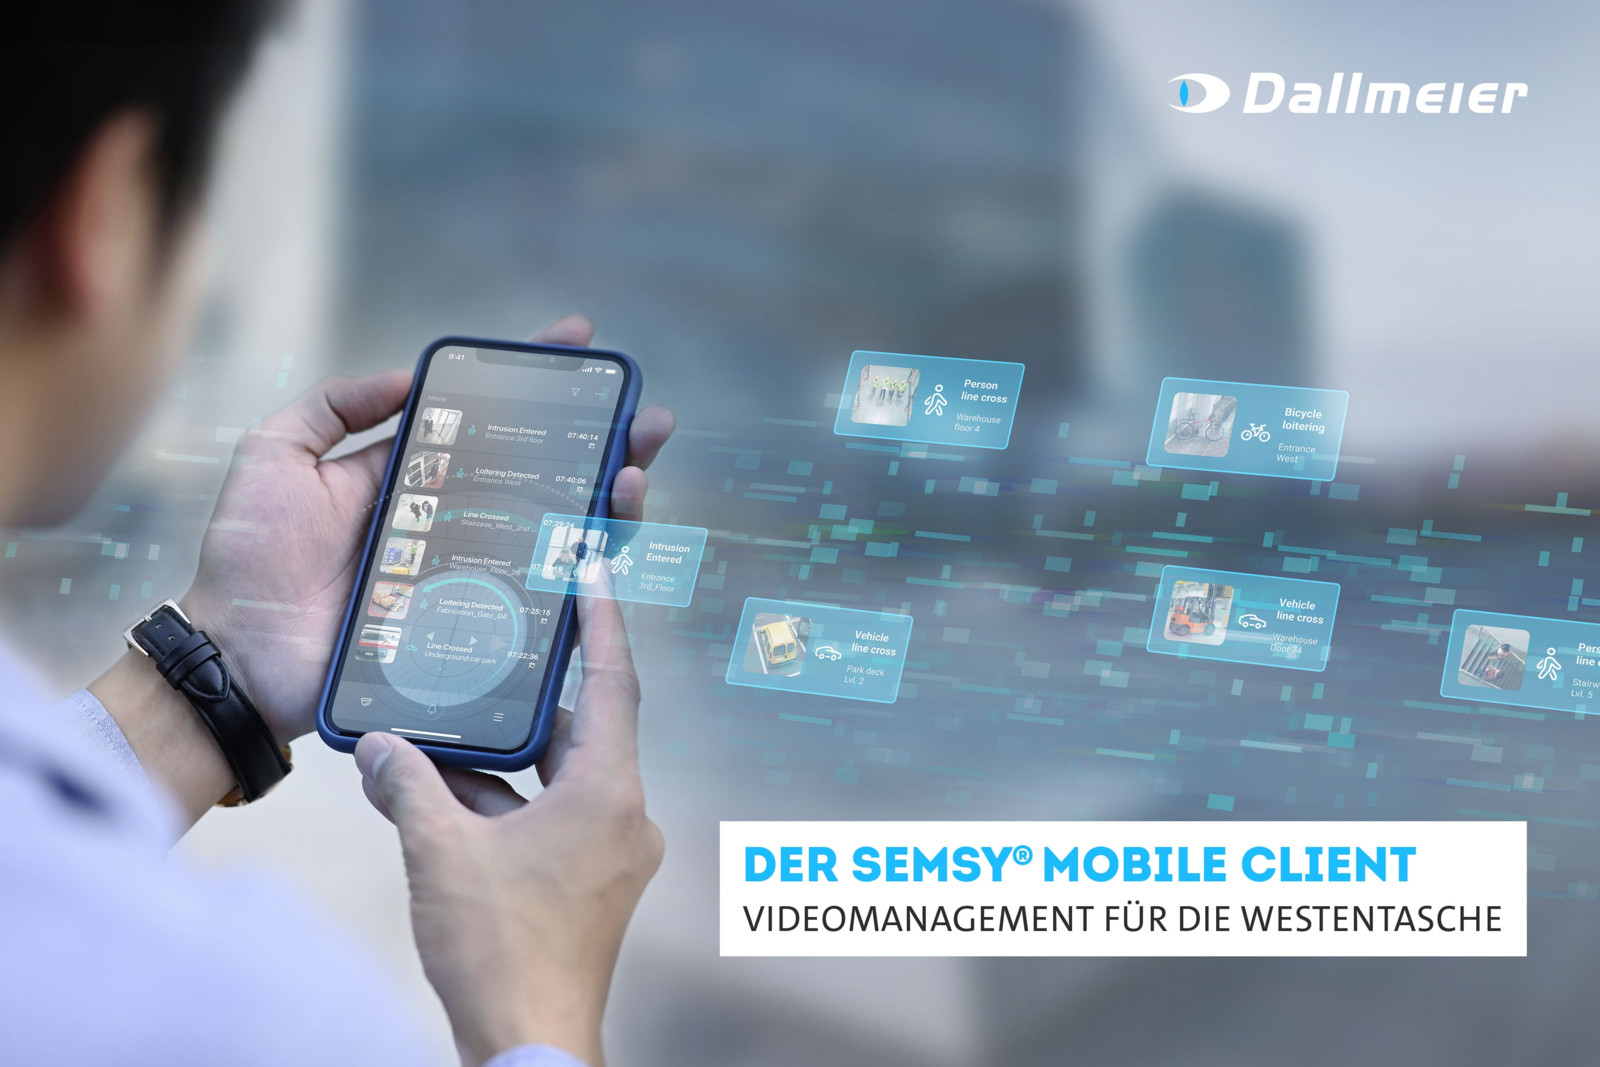 Verbindet die funktionalen und sicherheitstechnischen Anforderungen professioneller Organisationen mit der Anwenderfreundlichkeit und Einfachheit von Consumer-Apps: Der neue Dallmeier Semsy Mobile Client.